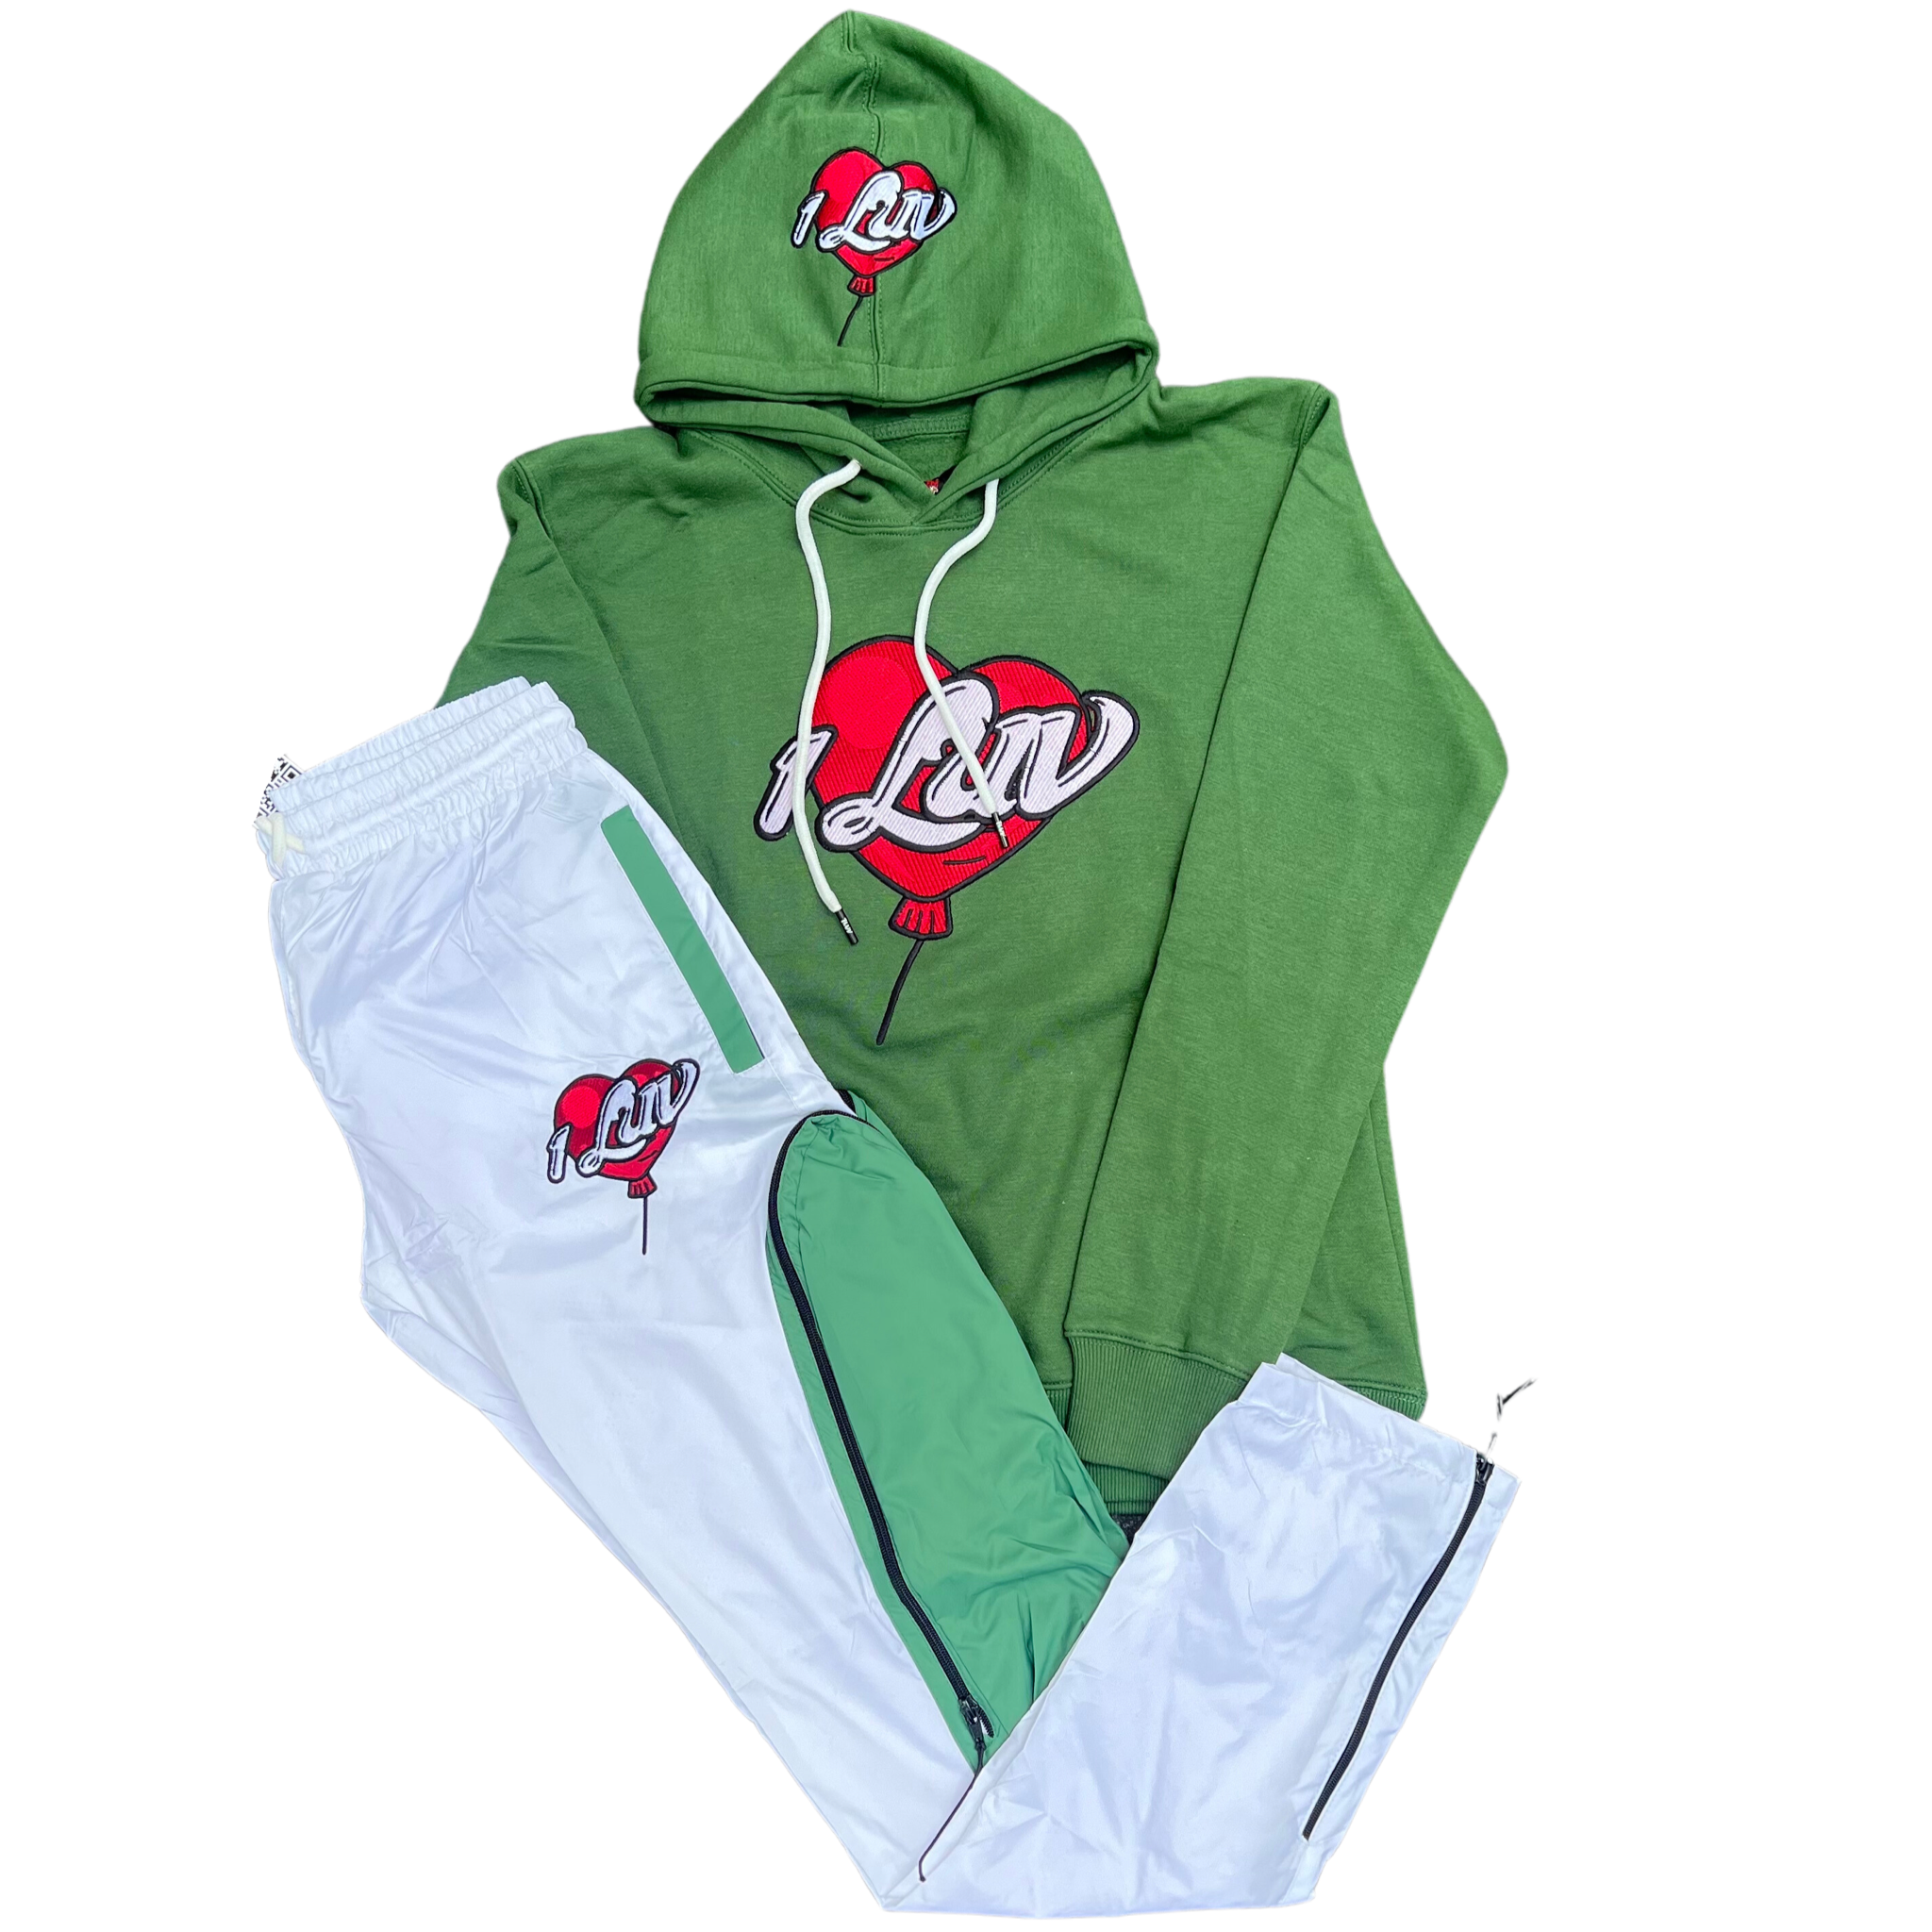 1Luv “Celtics" Windbreaker Suit